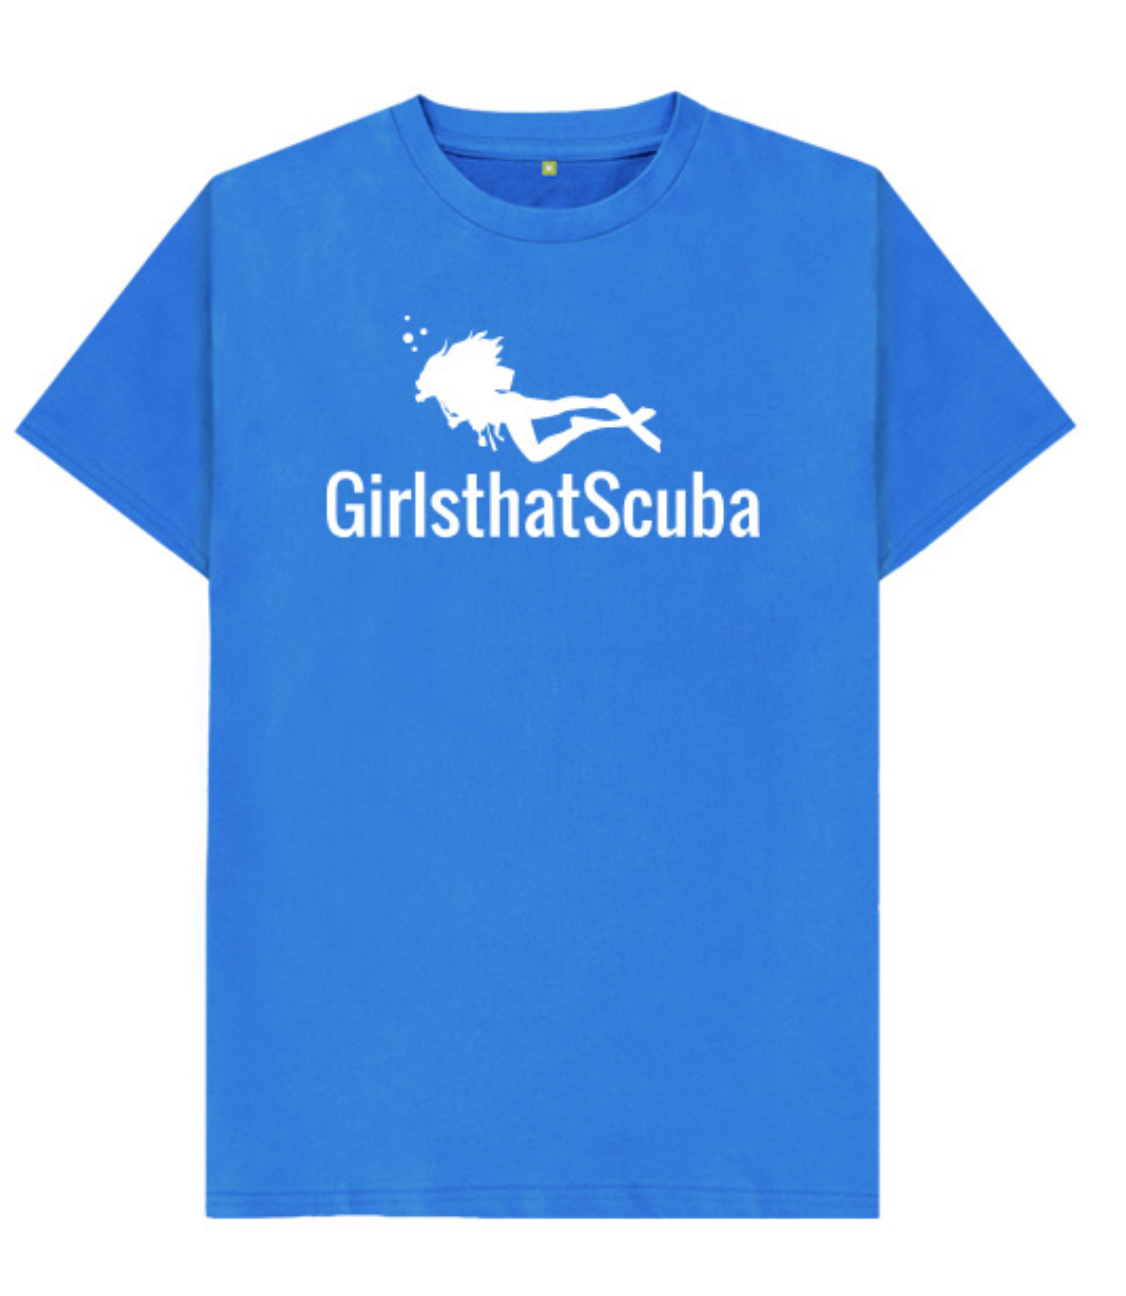 Kids Girls that Scuba T-shirt